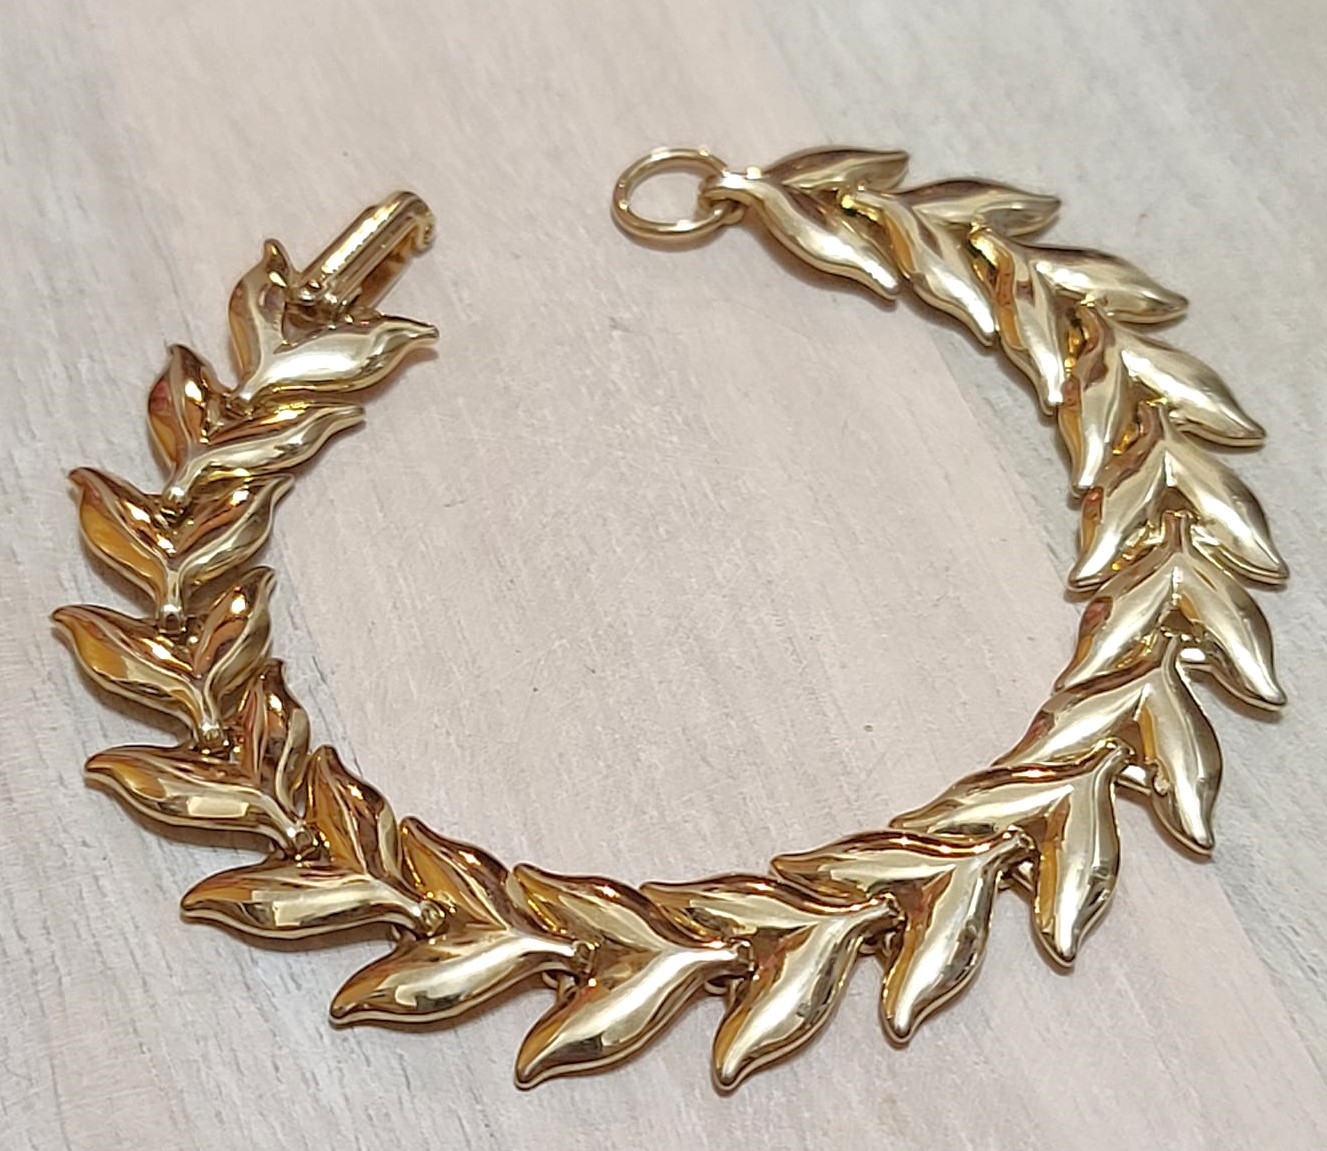 Vintage goldtone bracelet, link style with leaf motif design